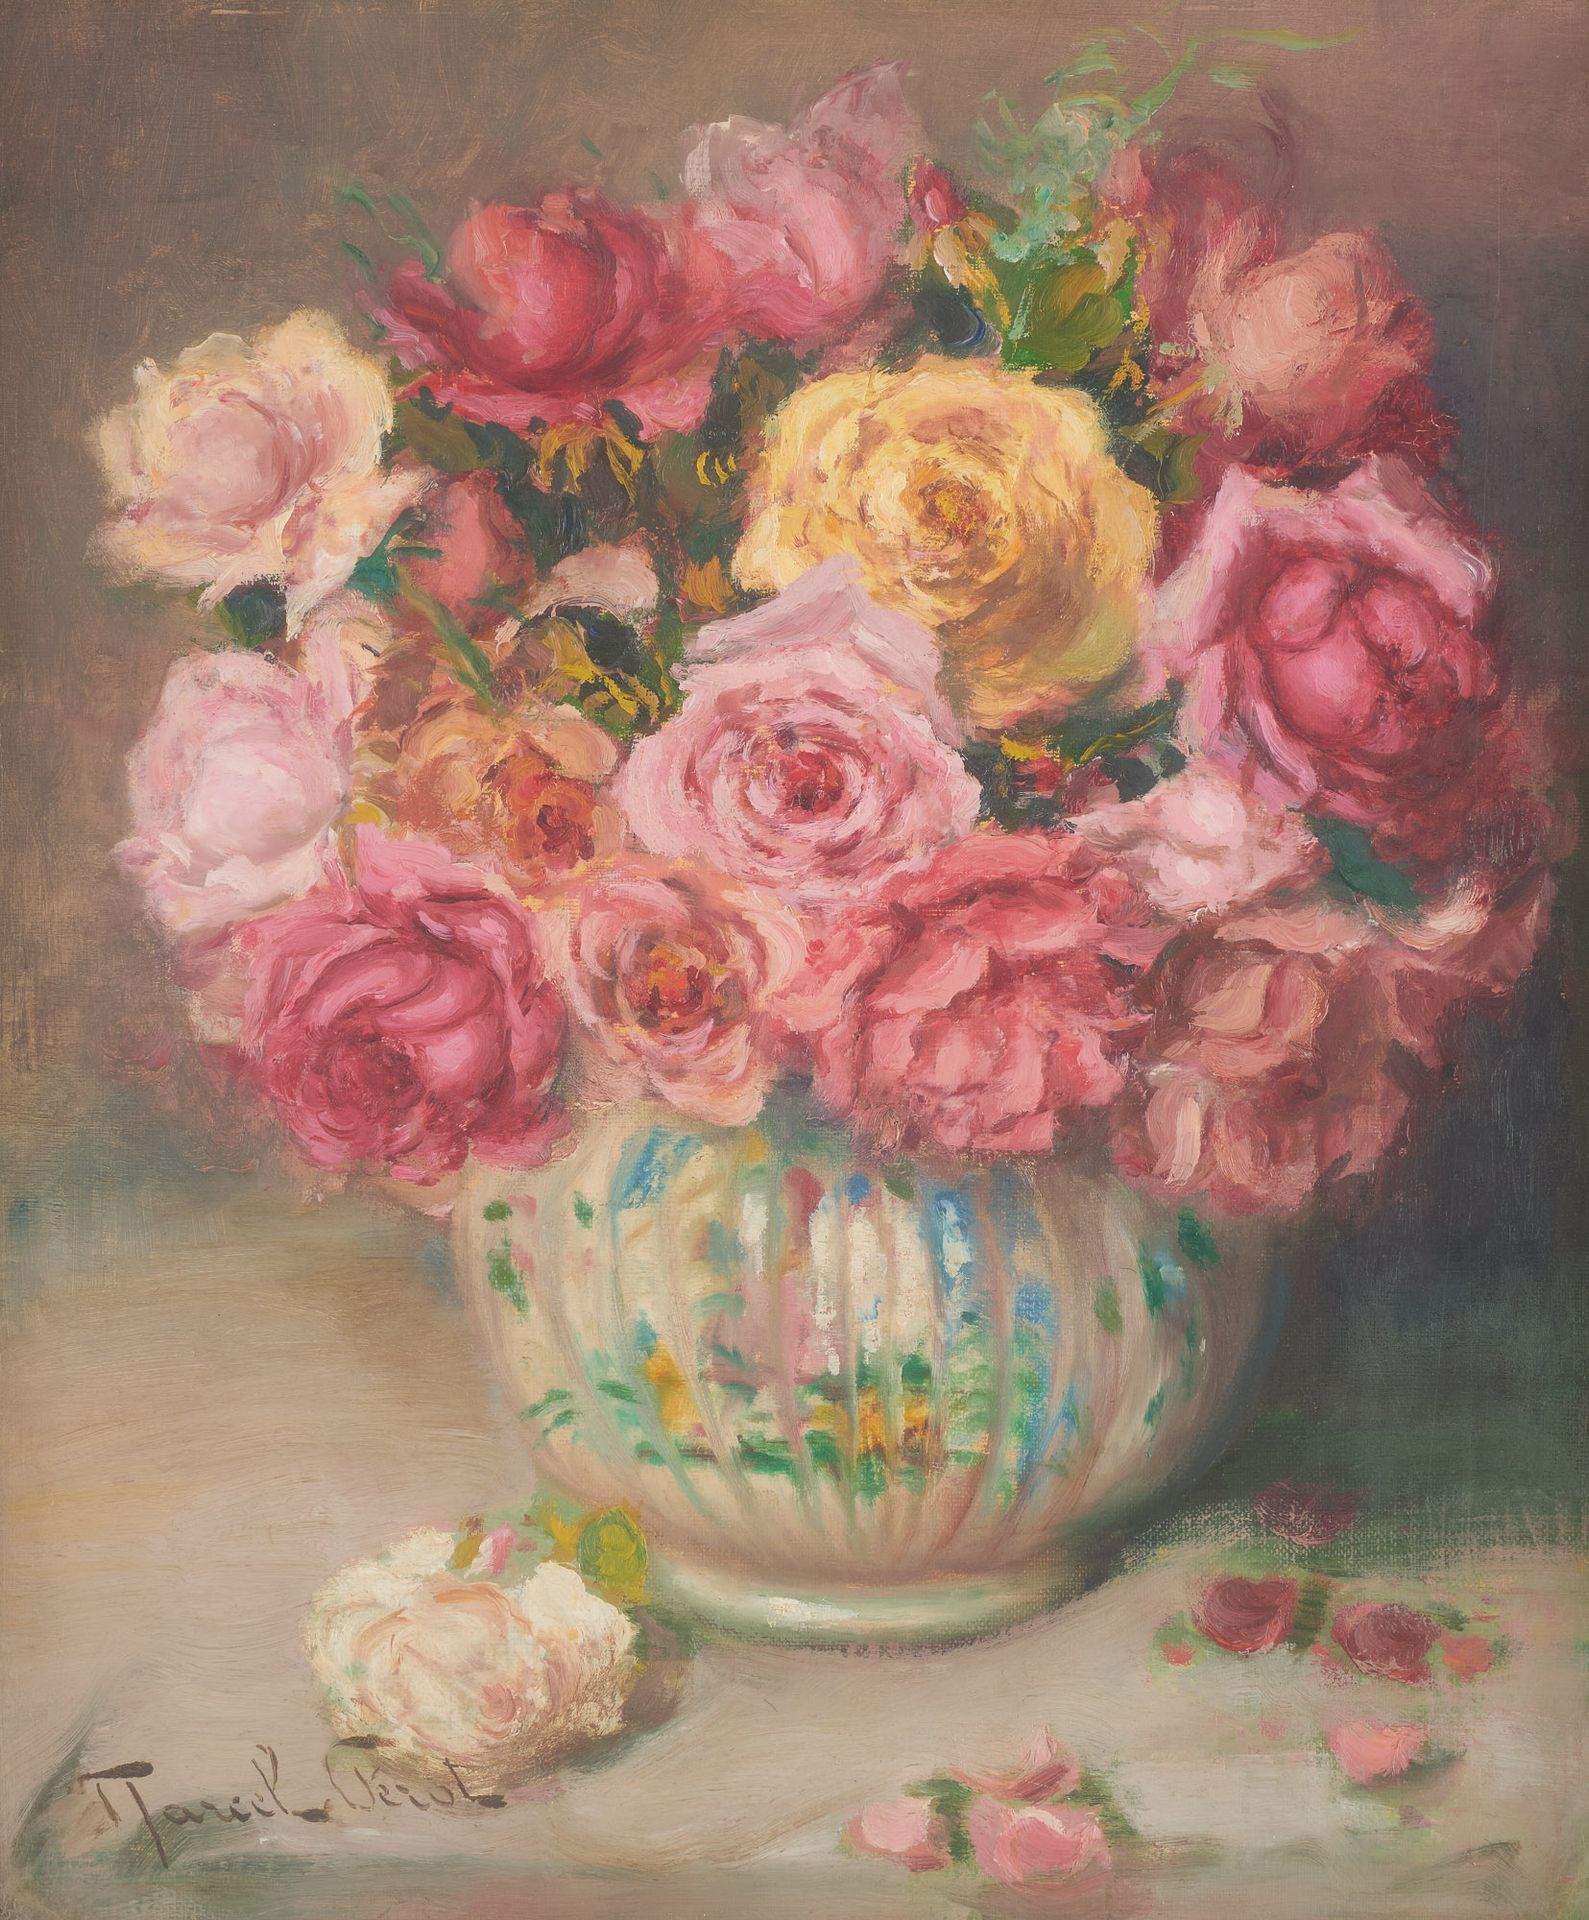 Marcel PEROT (École belge 20e) 裱在纸板上的布面油画：盛开的玫瑰花瓶。

签名：马塞尔-佩罗。

尺寸：54,5 x 46 厘米。